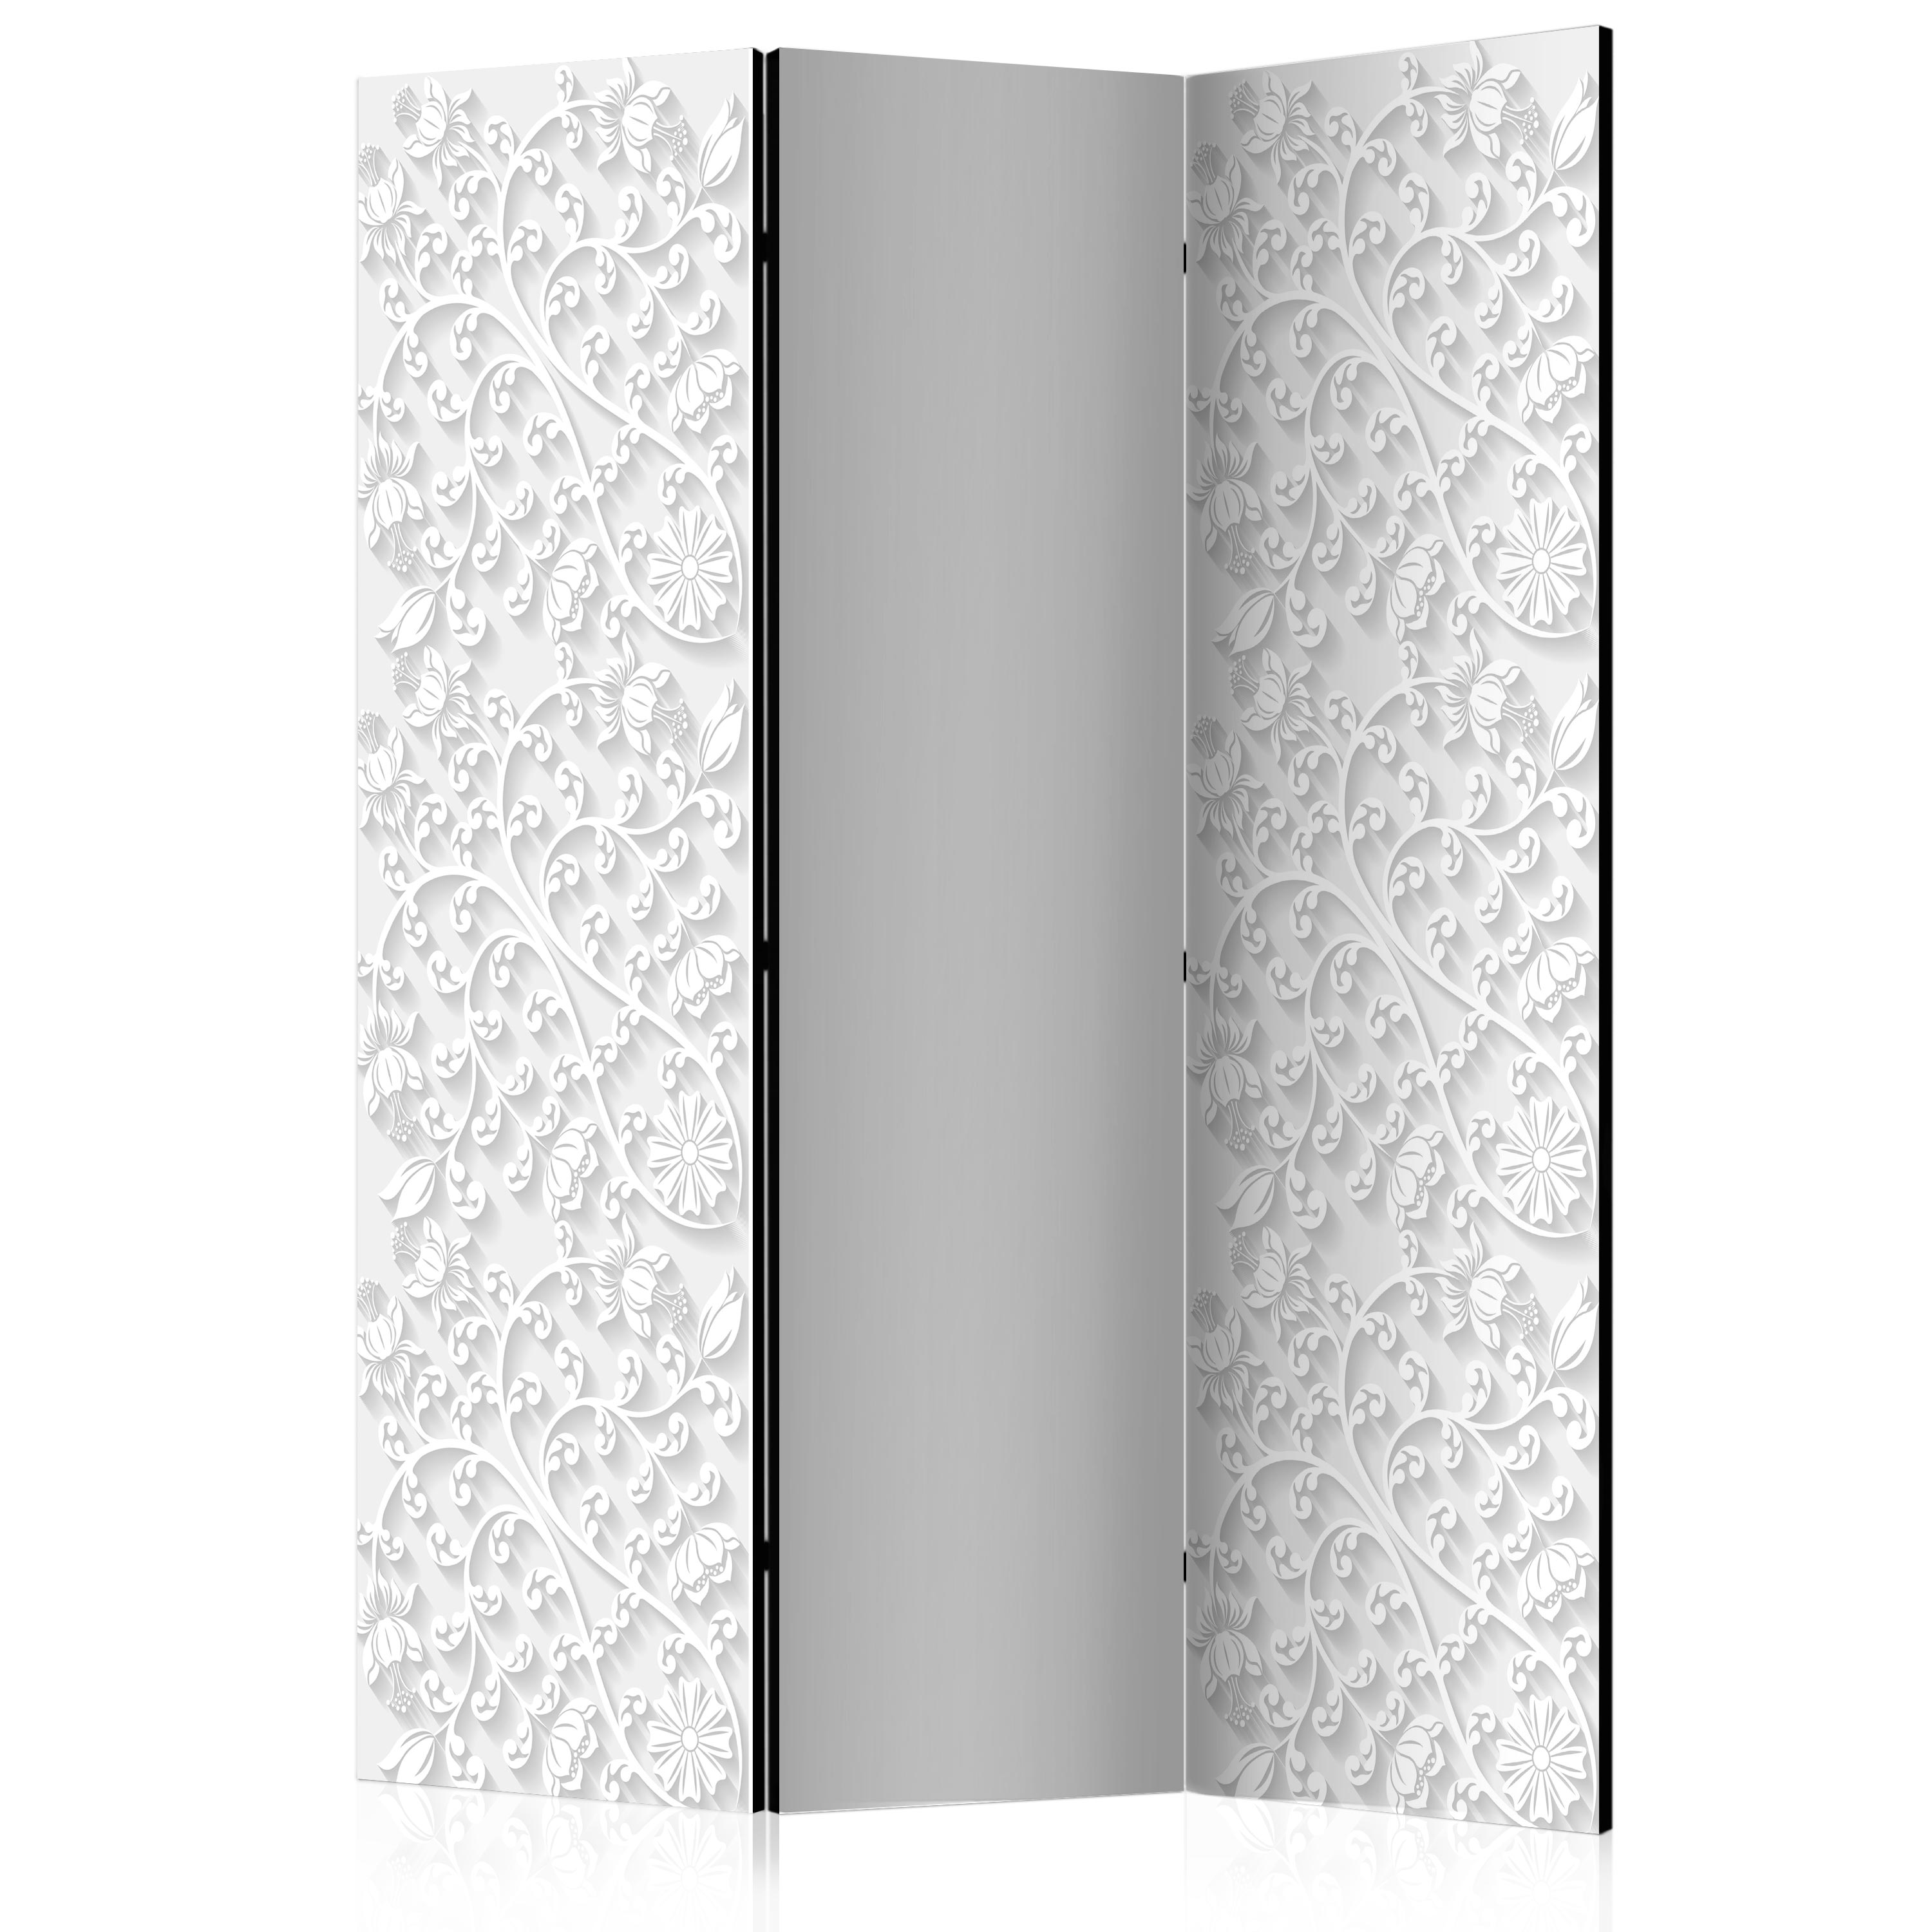 Room Divider - Room divider – Floral pattern I - 135x172